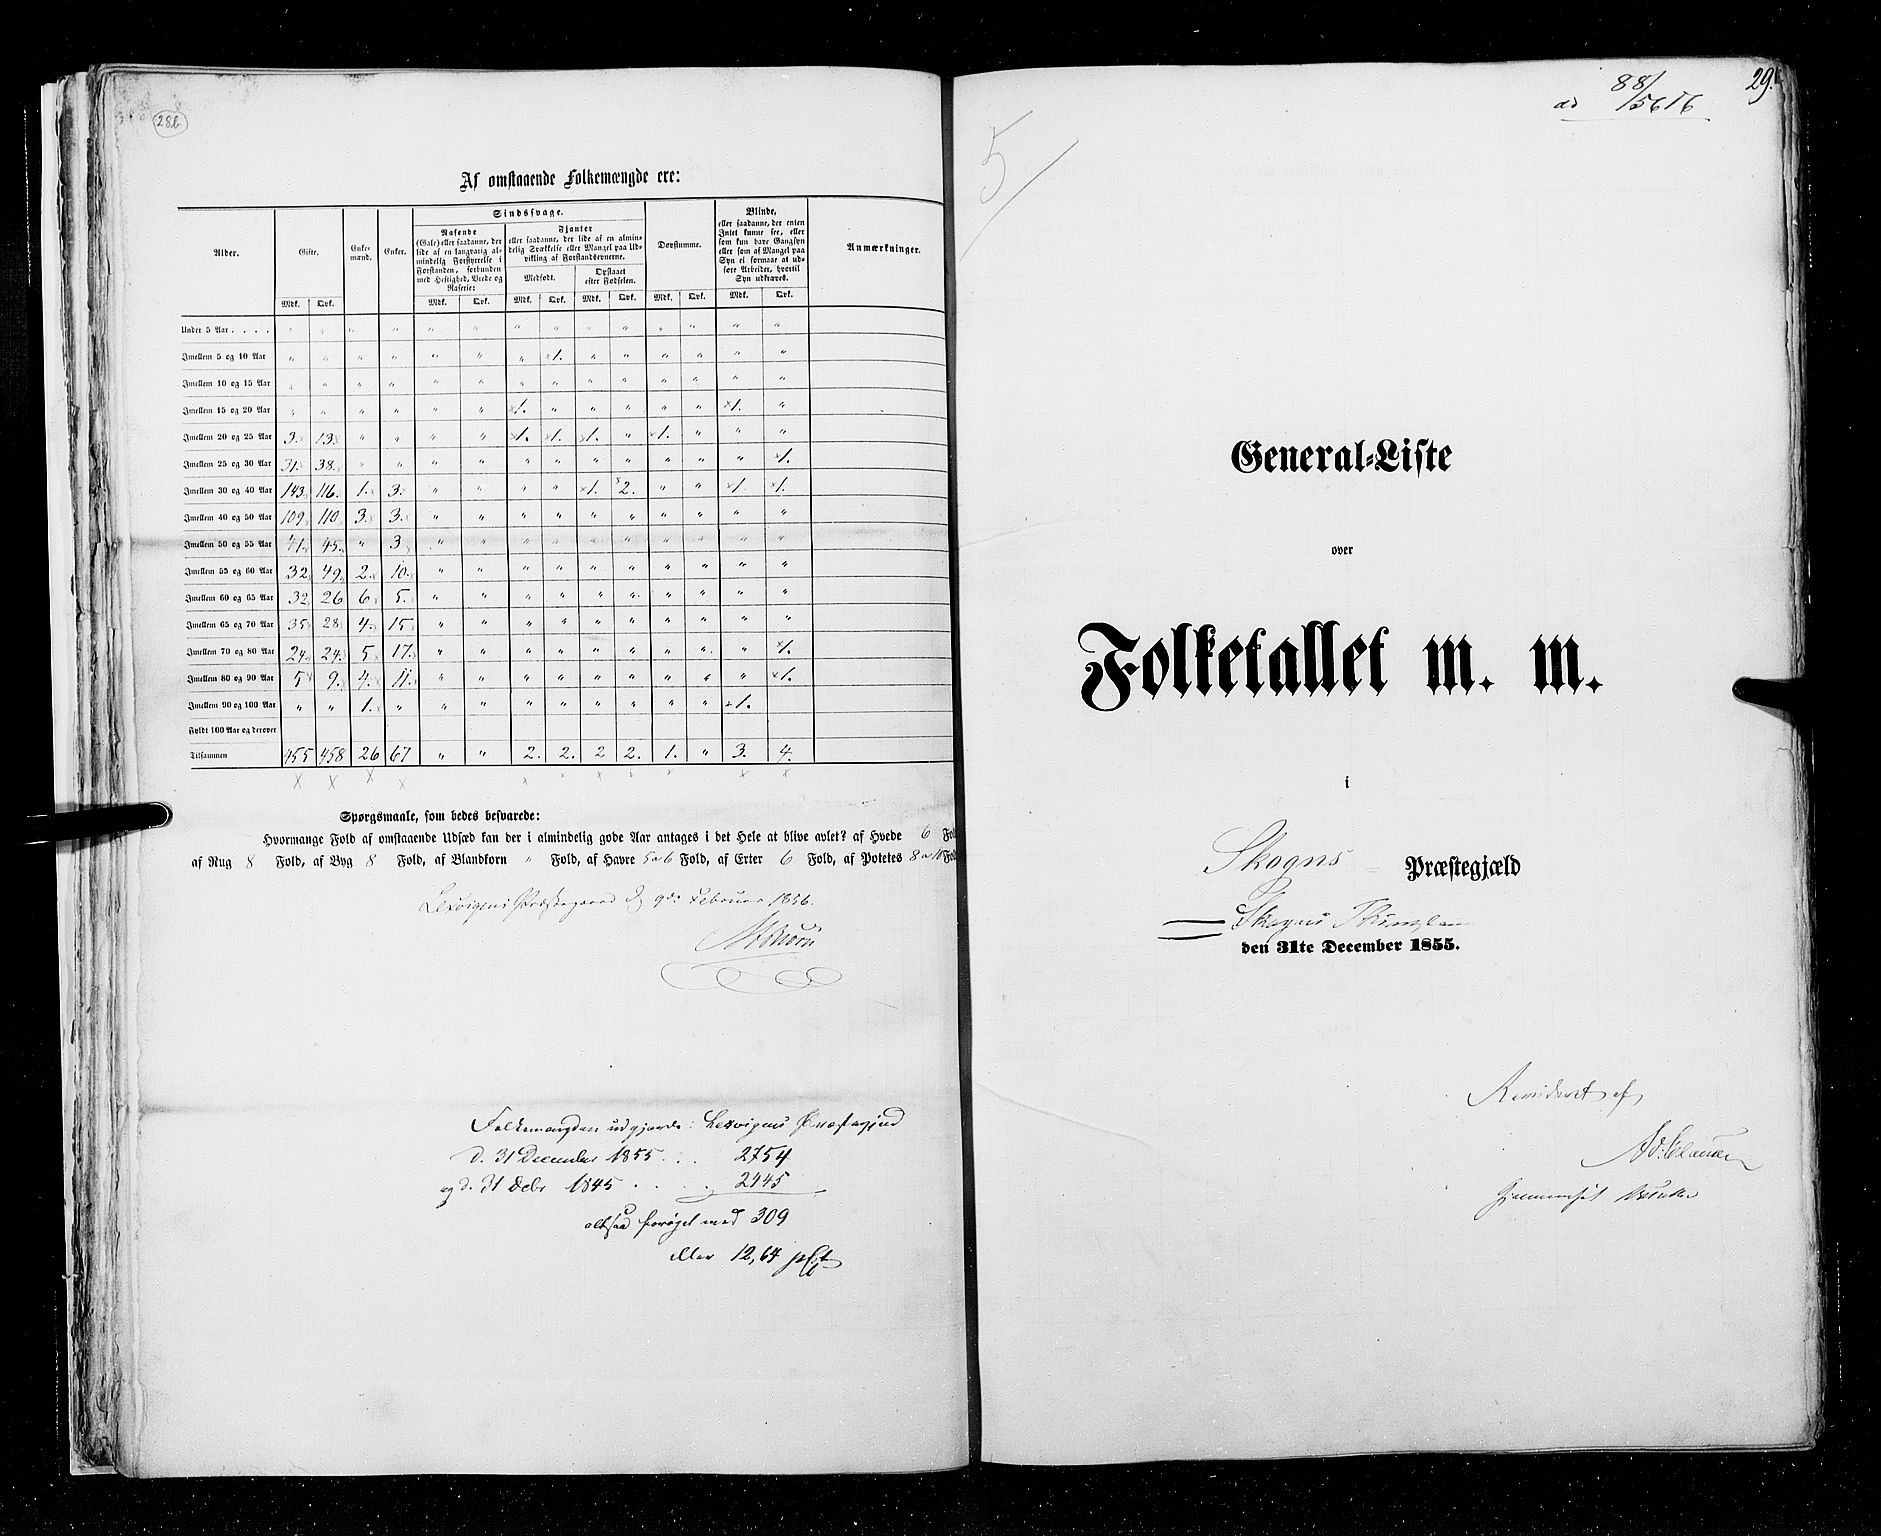 RA, Census 1855, vol. 6A: Nordre Trondhjem amt og Nordland amt, 1855, p. 29